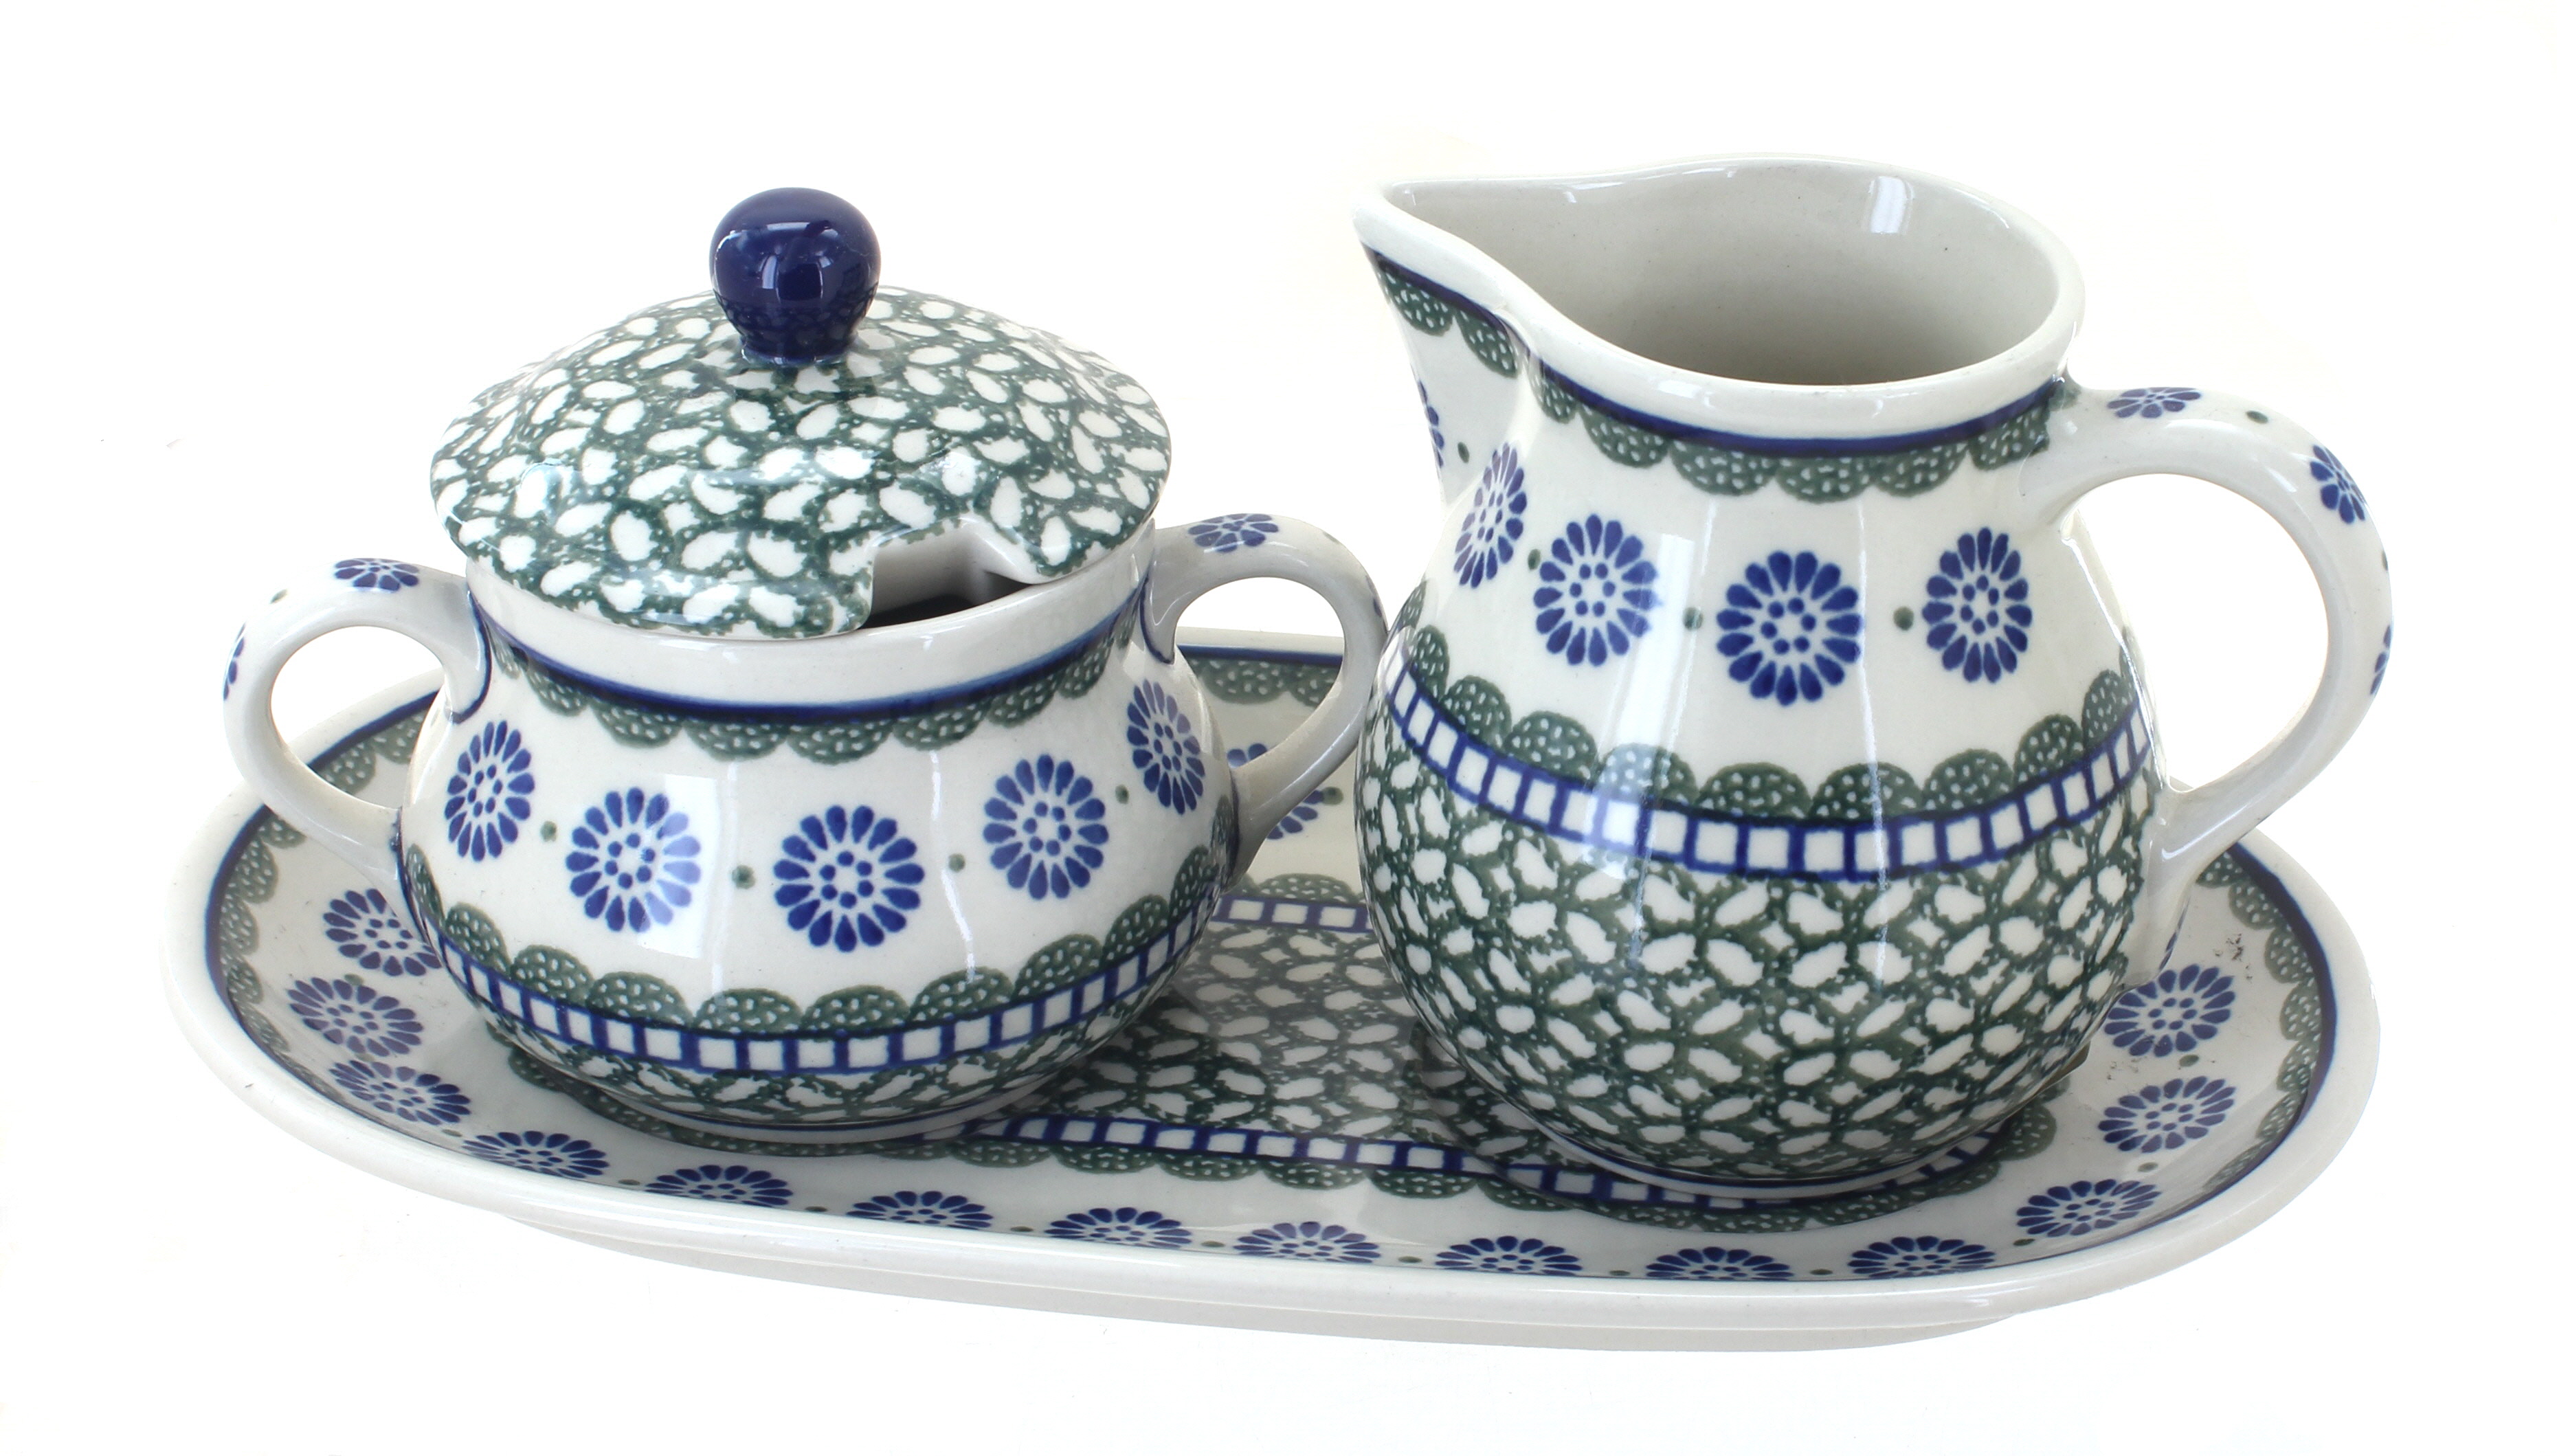 Sugar set. Синяя птица посуда из керамики Польша. Park Rose Pottery. Польская керамика купить в Рязани.